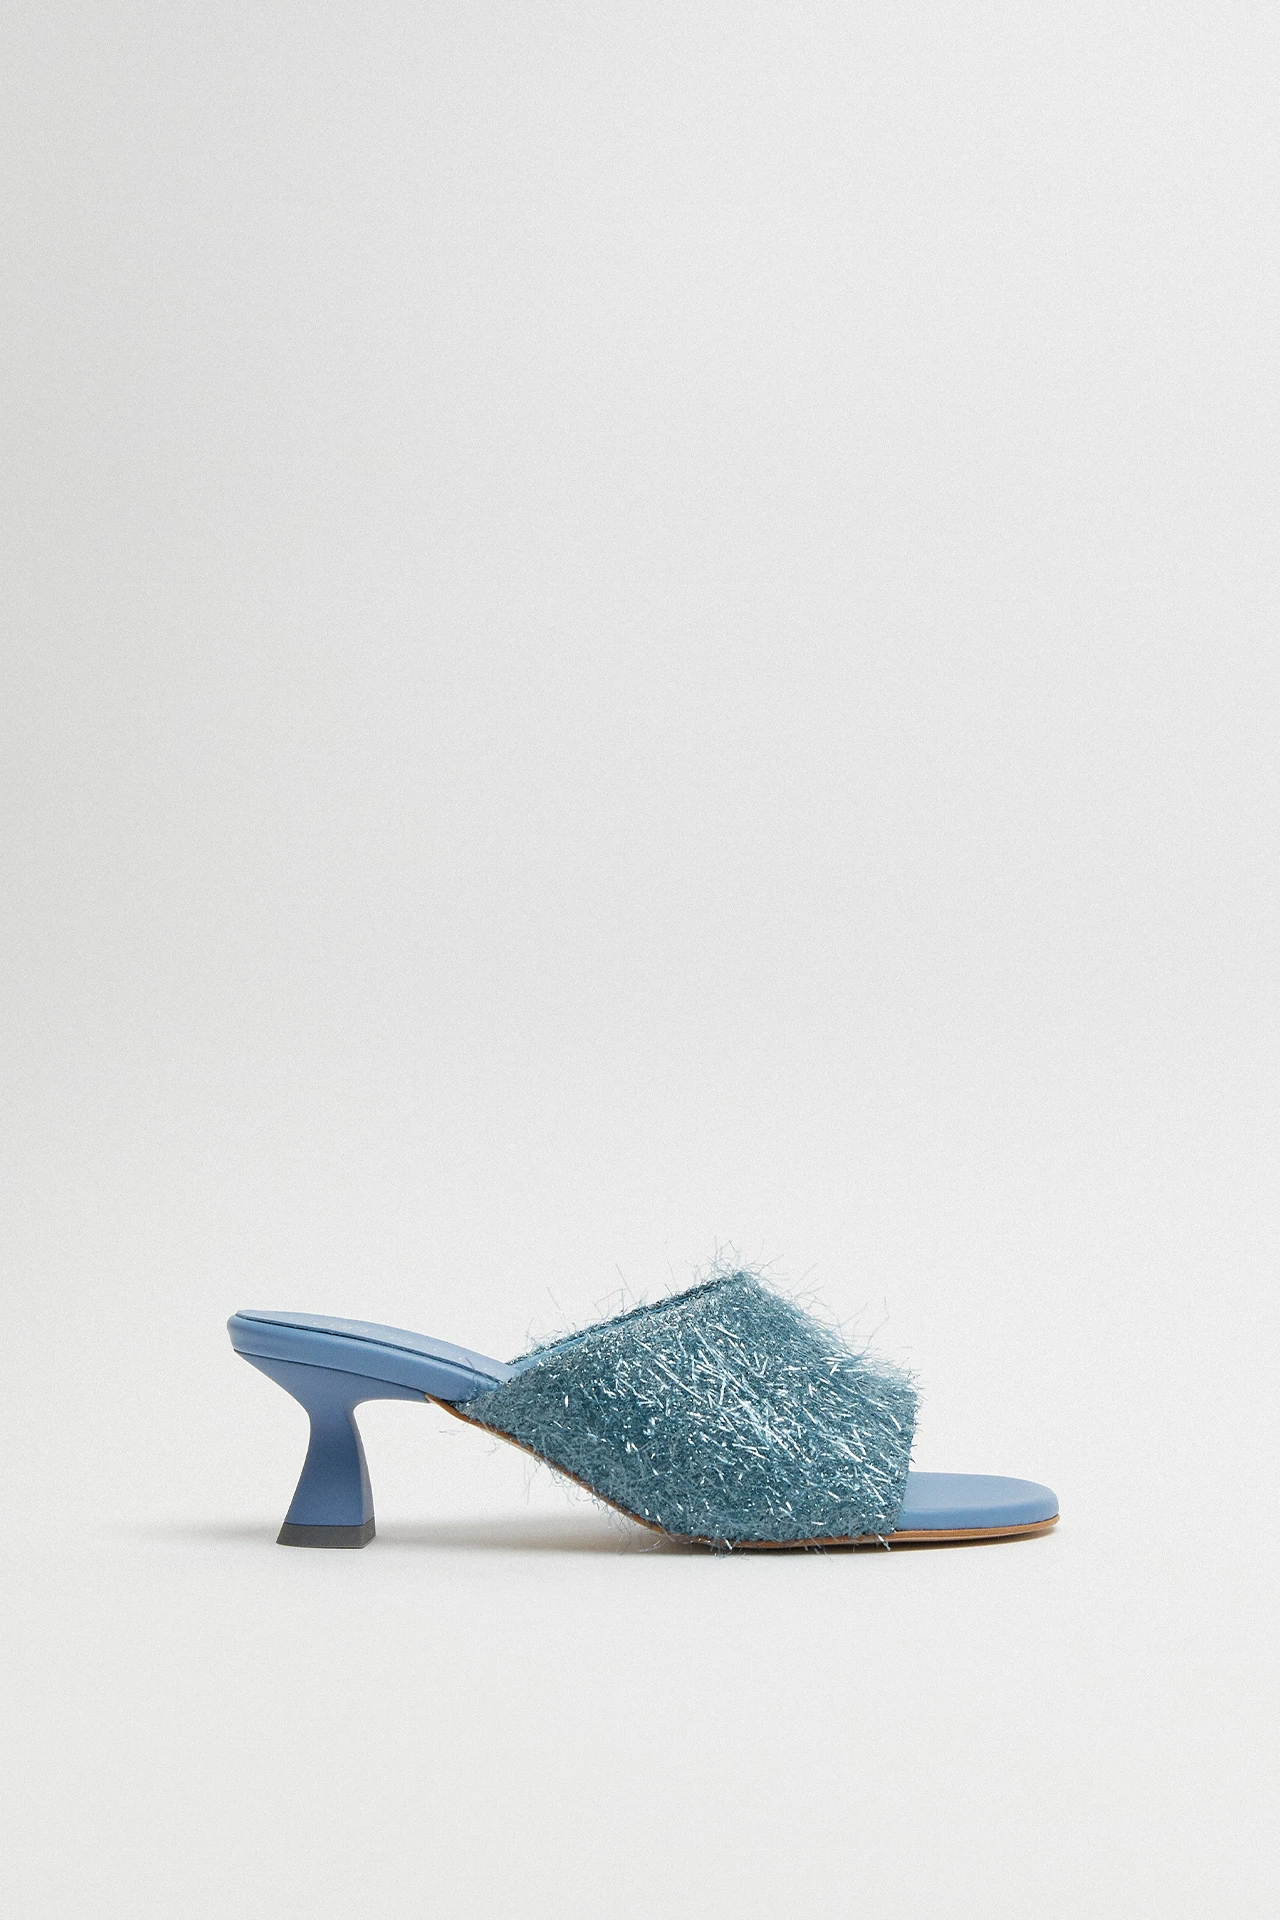 E8-talita-blue-mule-sandal-01